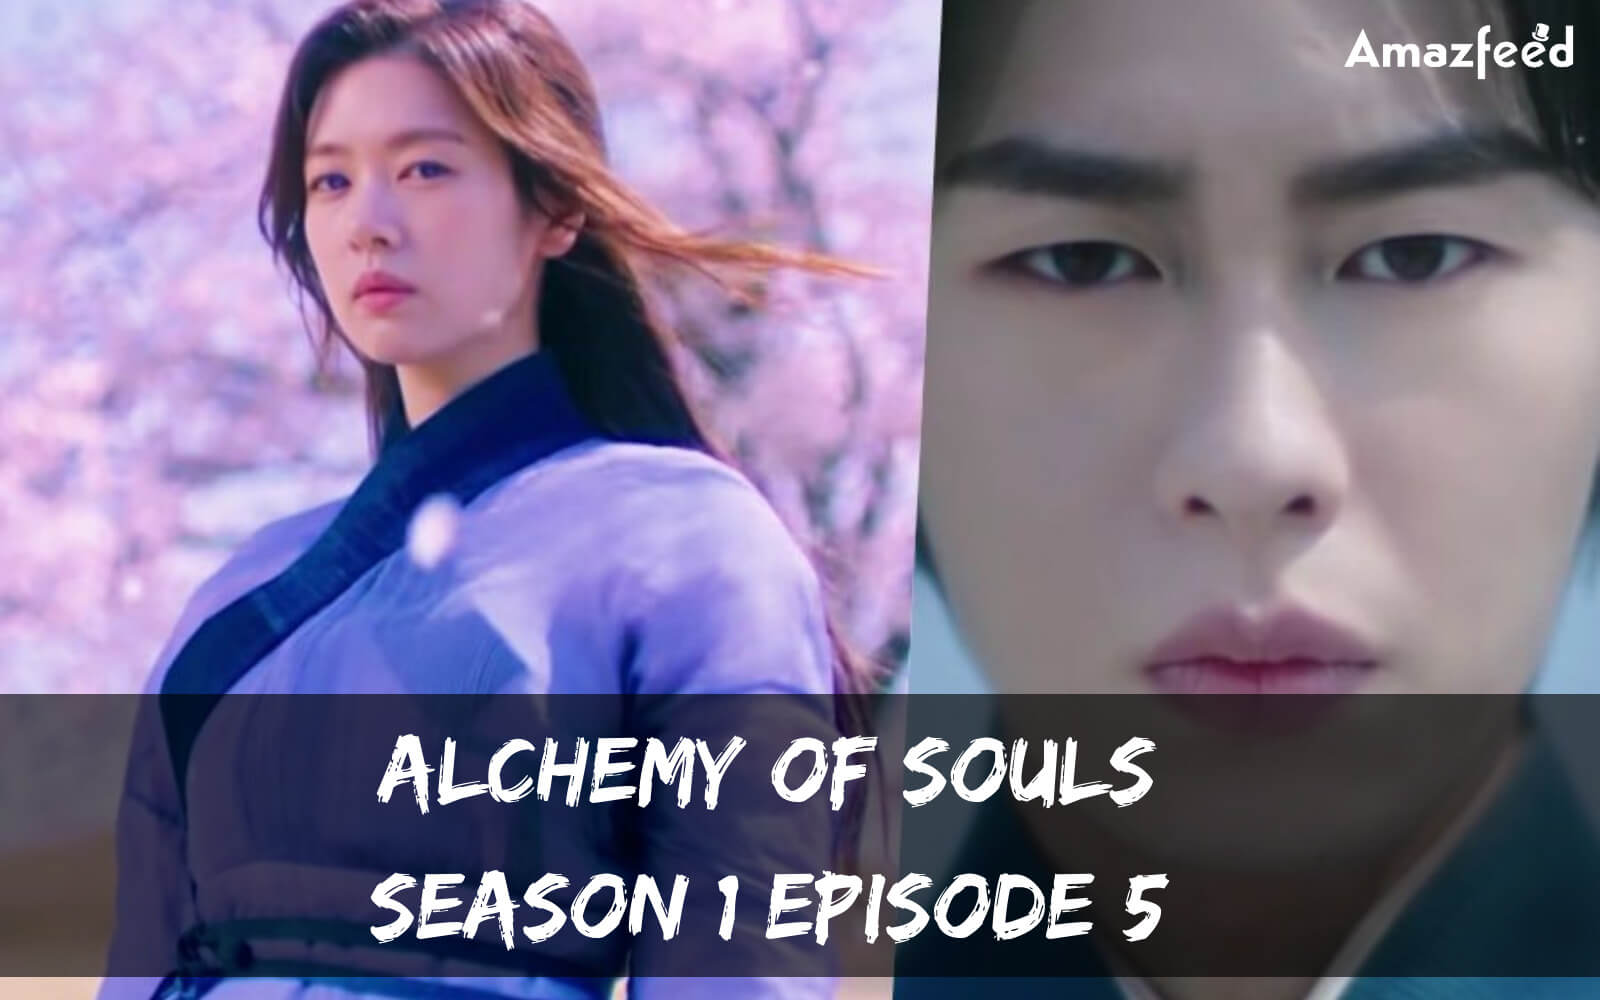 Alchemy of Souls season 1 Episode 5 release date